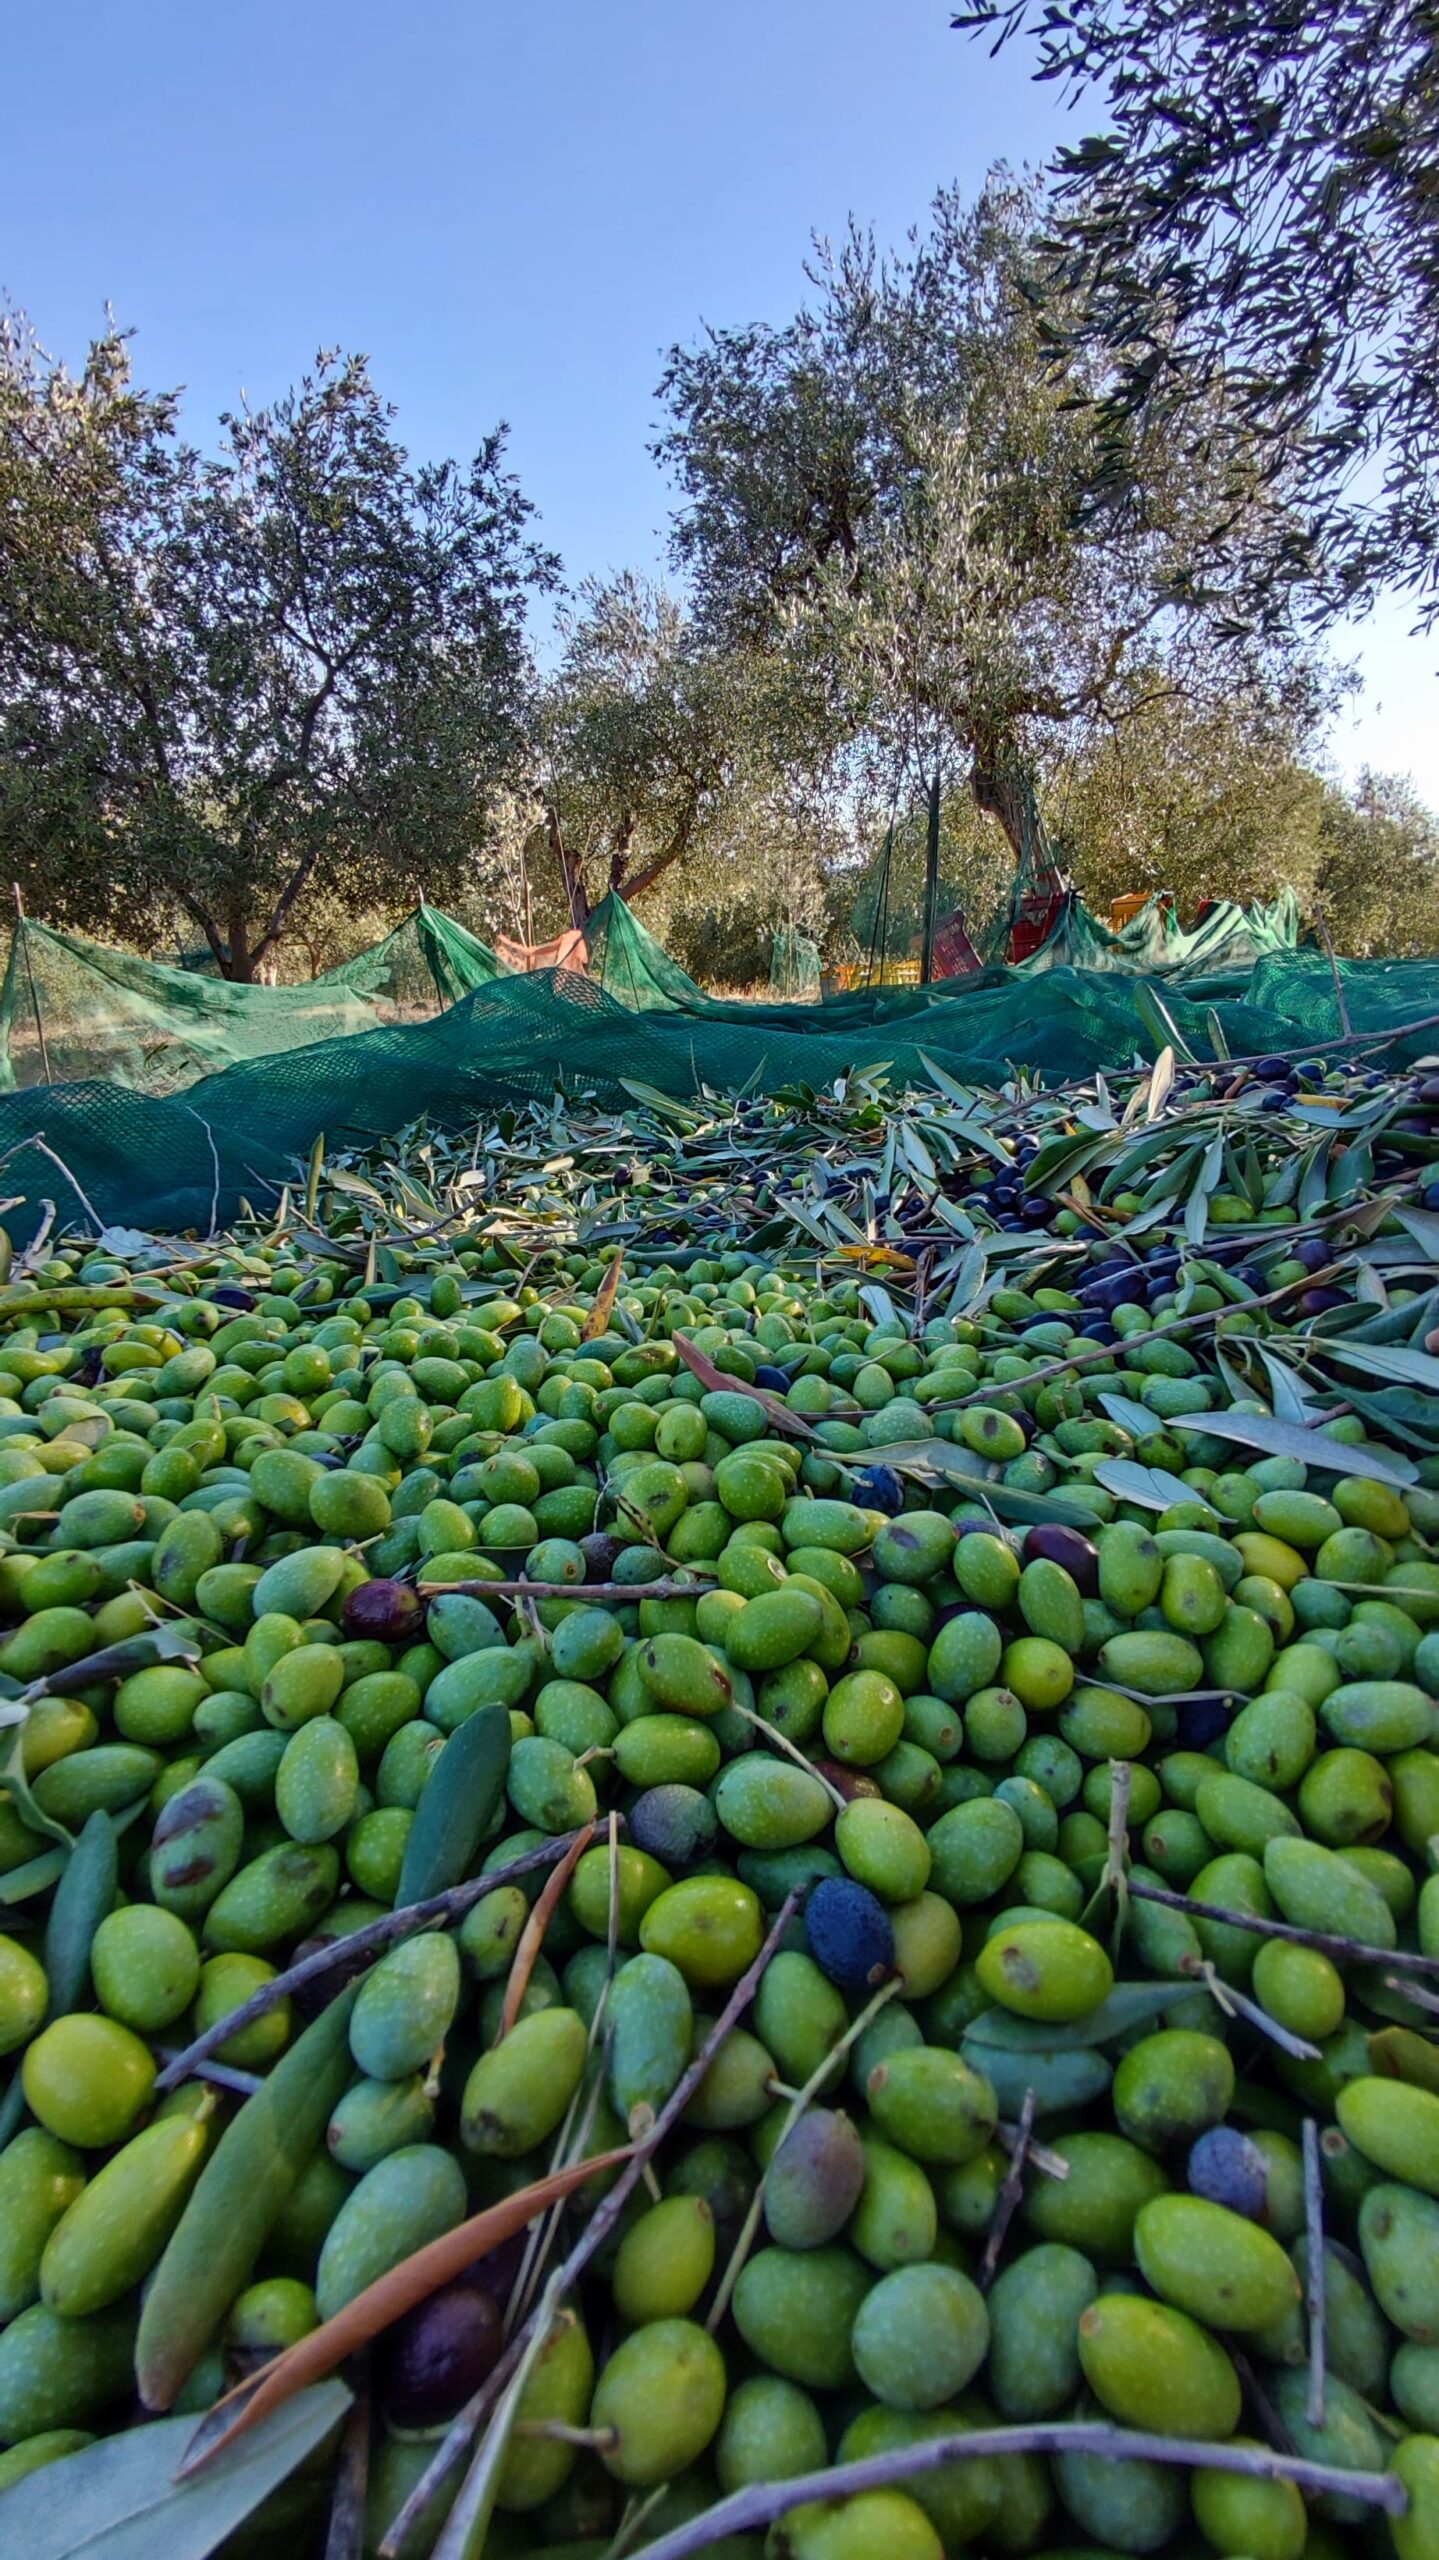 I vantaggi dell'olio extravergine di oliva biologico 2